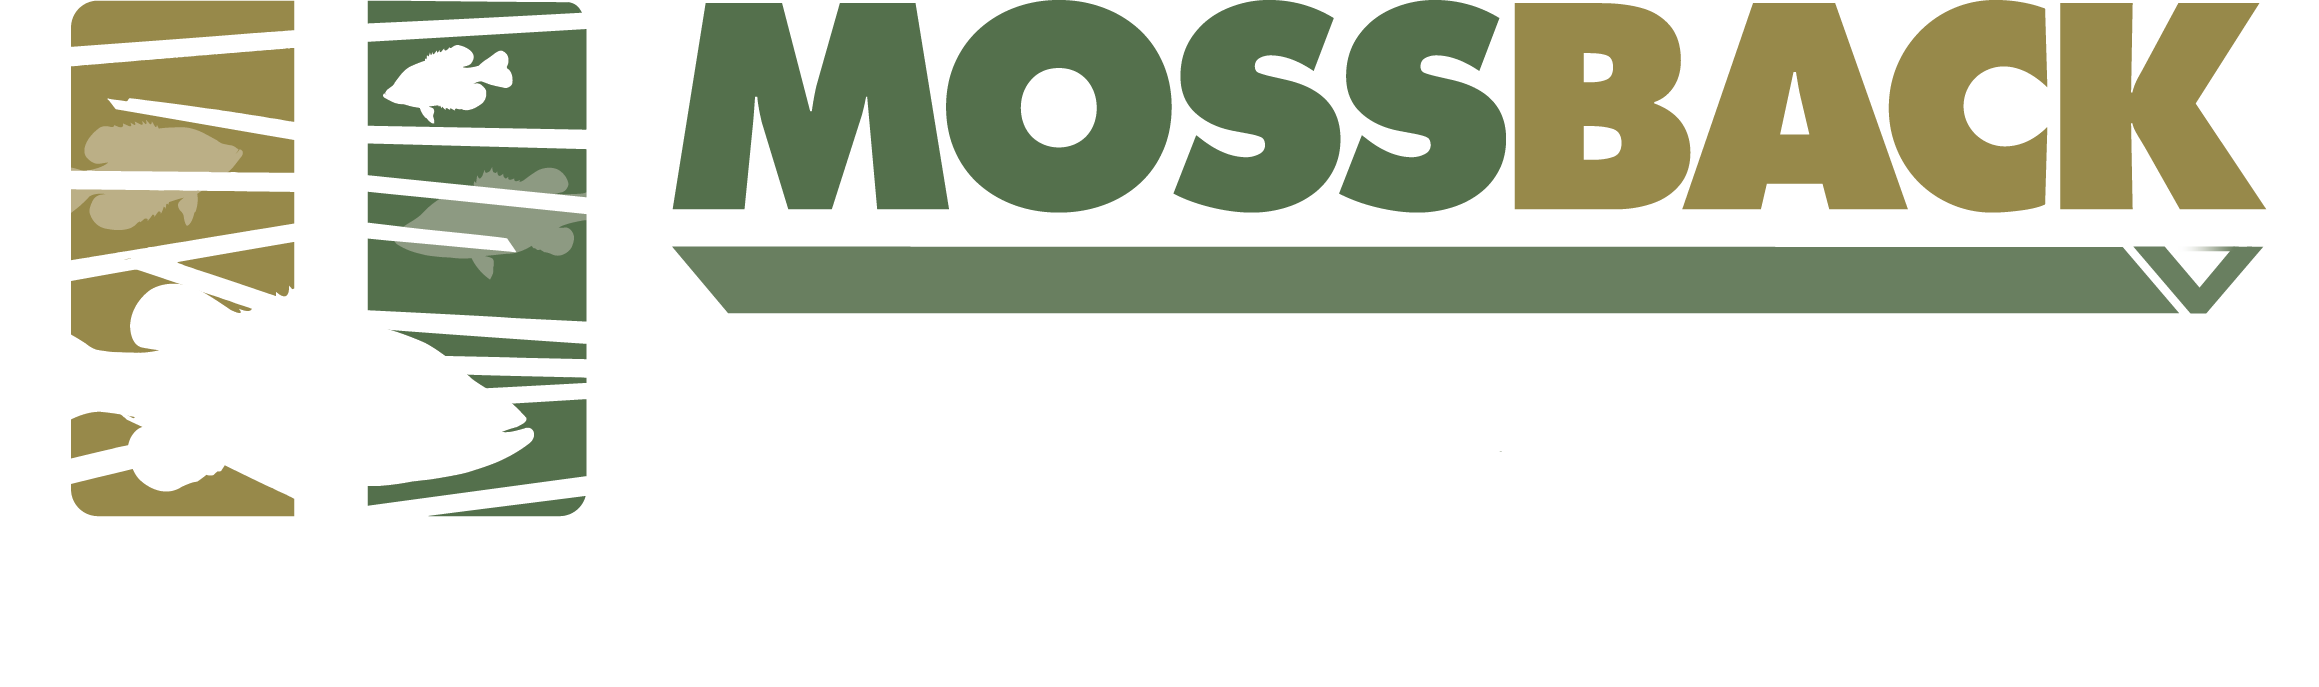 MossBack Fish Habitat Logo